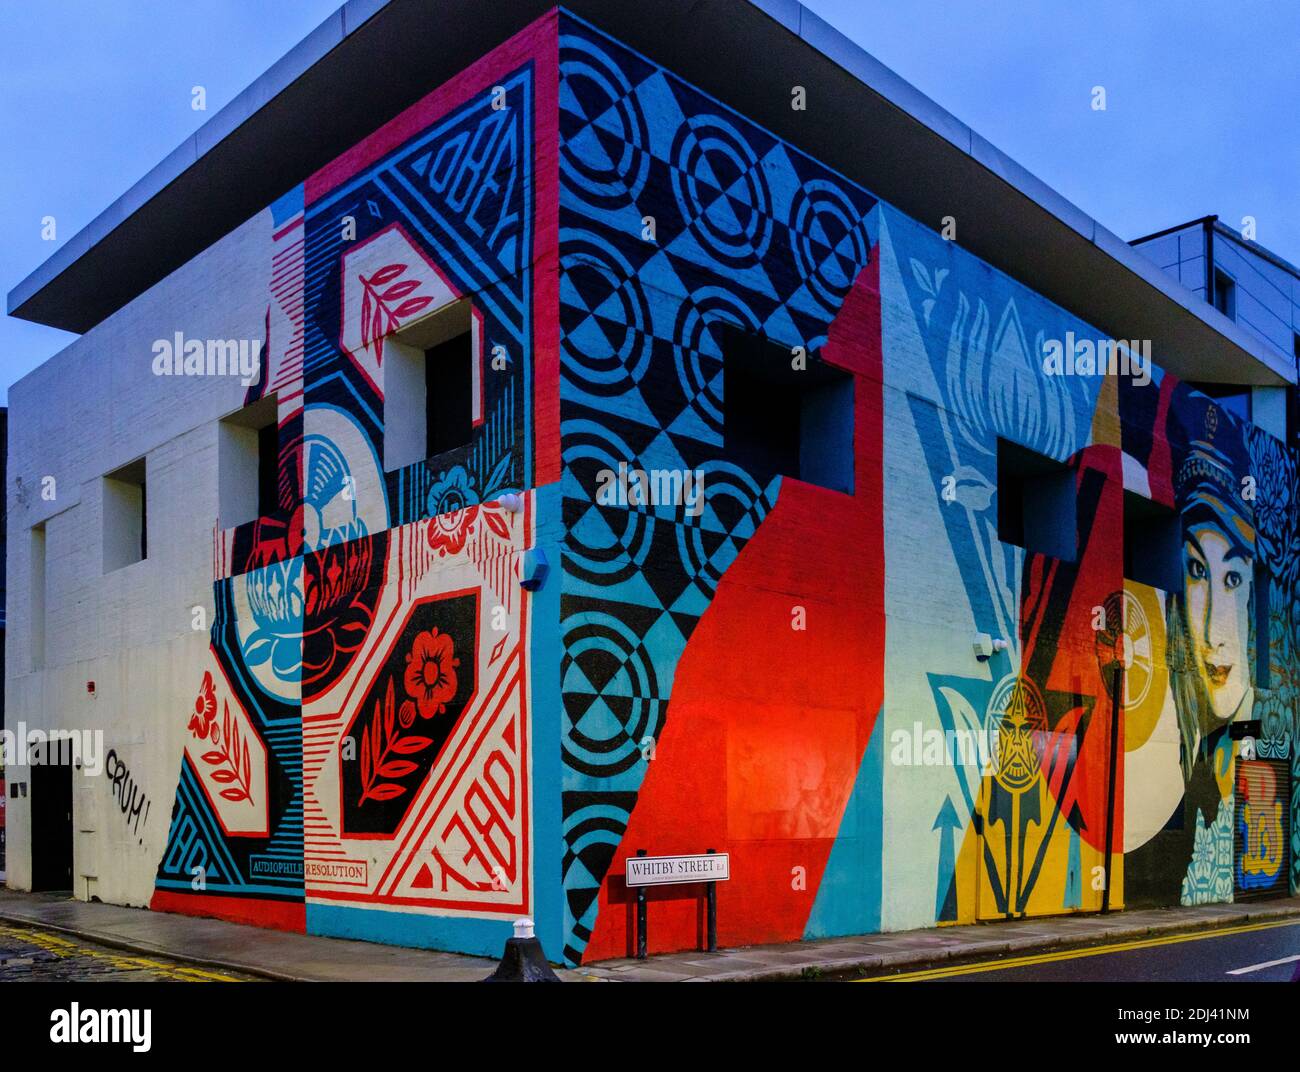 Arte callejero brillante y colorido del artista Shepard Fairey en el exterior de un edificio en Whitby Street Shoreditch Londres, Reino Unido Foto de stock